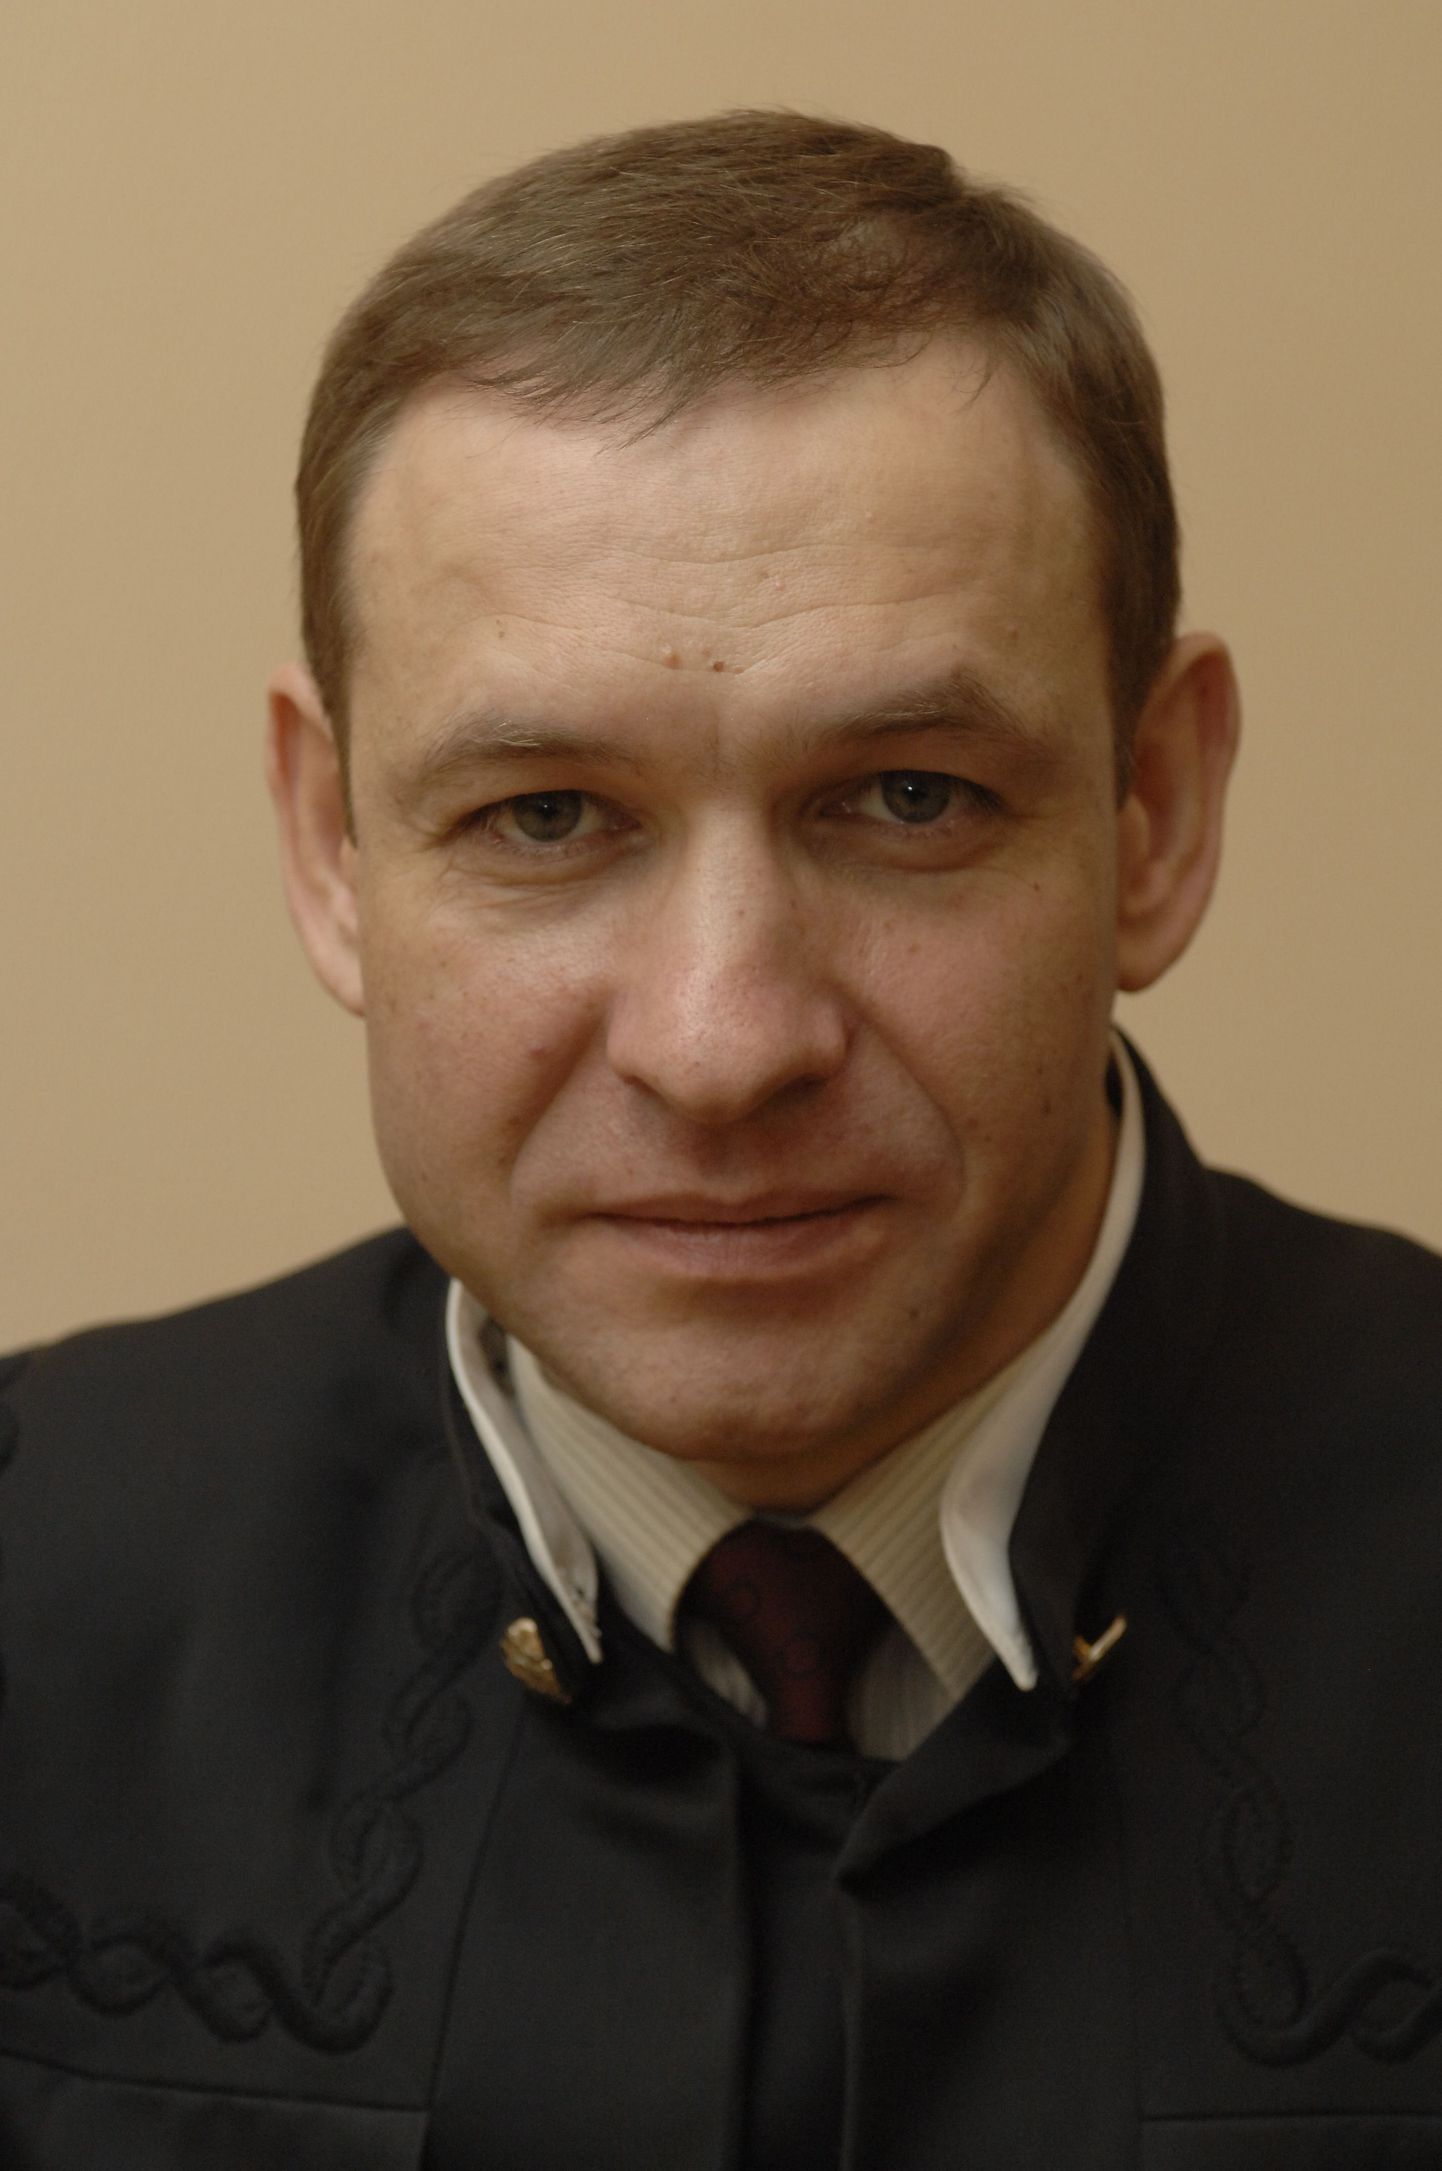 Член Мосгорсуда Эдуард Чувашов был застрелен в подъезде своего дома 12 апреля 2010 года.